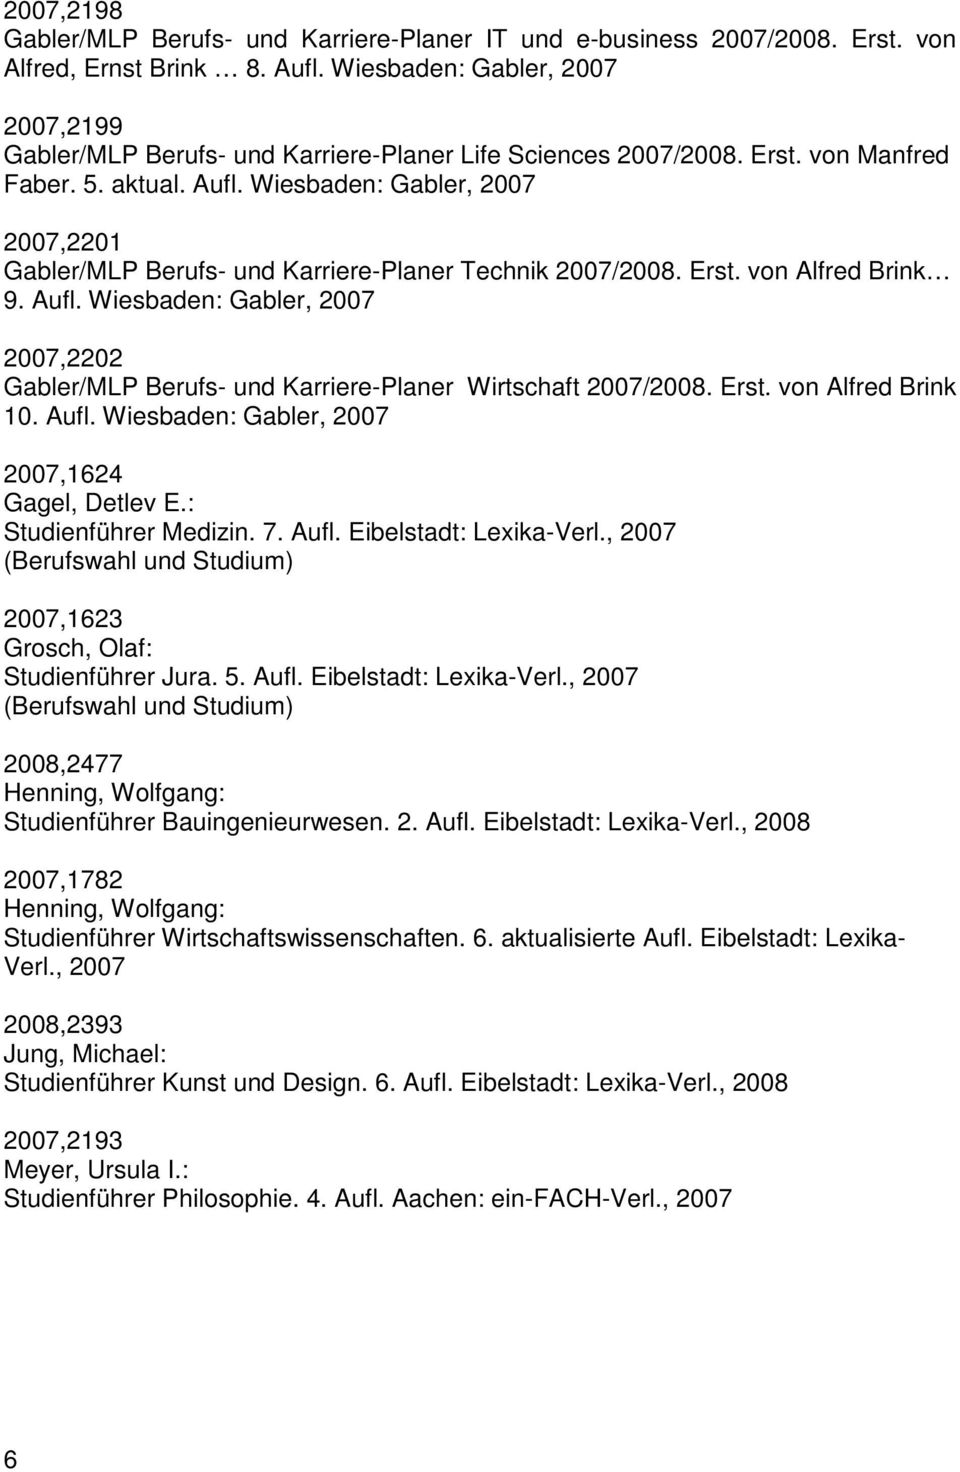 Wiesbaden: Gabler, 2007 2007,2201 Gabler/MLP Berufs- und Karriere-Planer Technik 2007/2008. Erst. von Alfred Brink 9. Aufl.